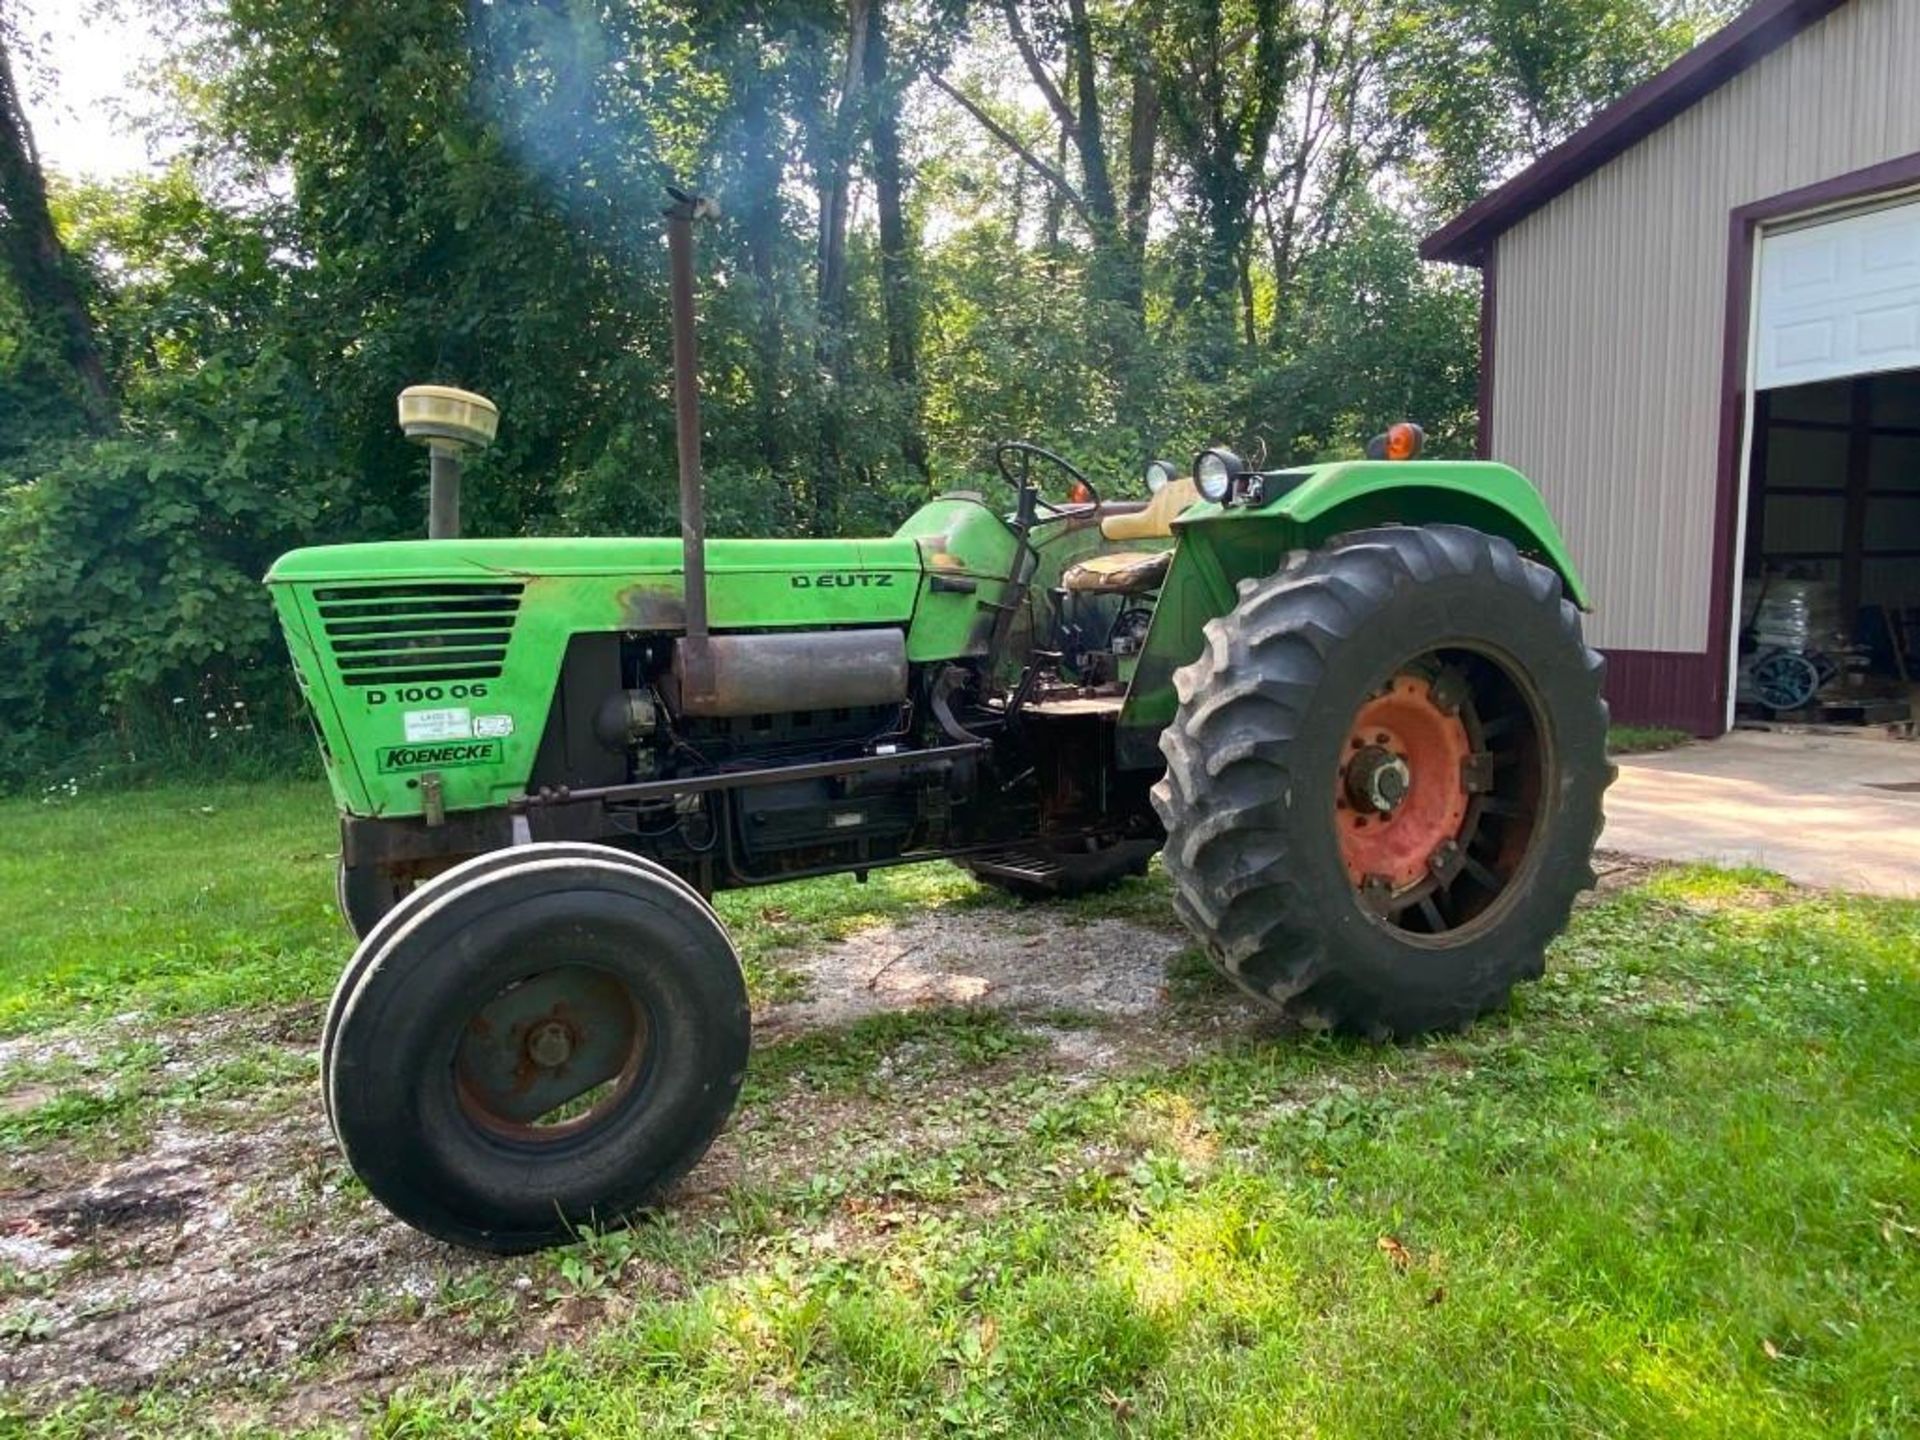 Deutz D10006 Tractor